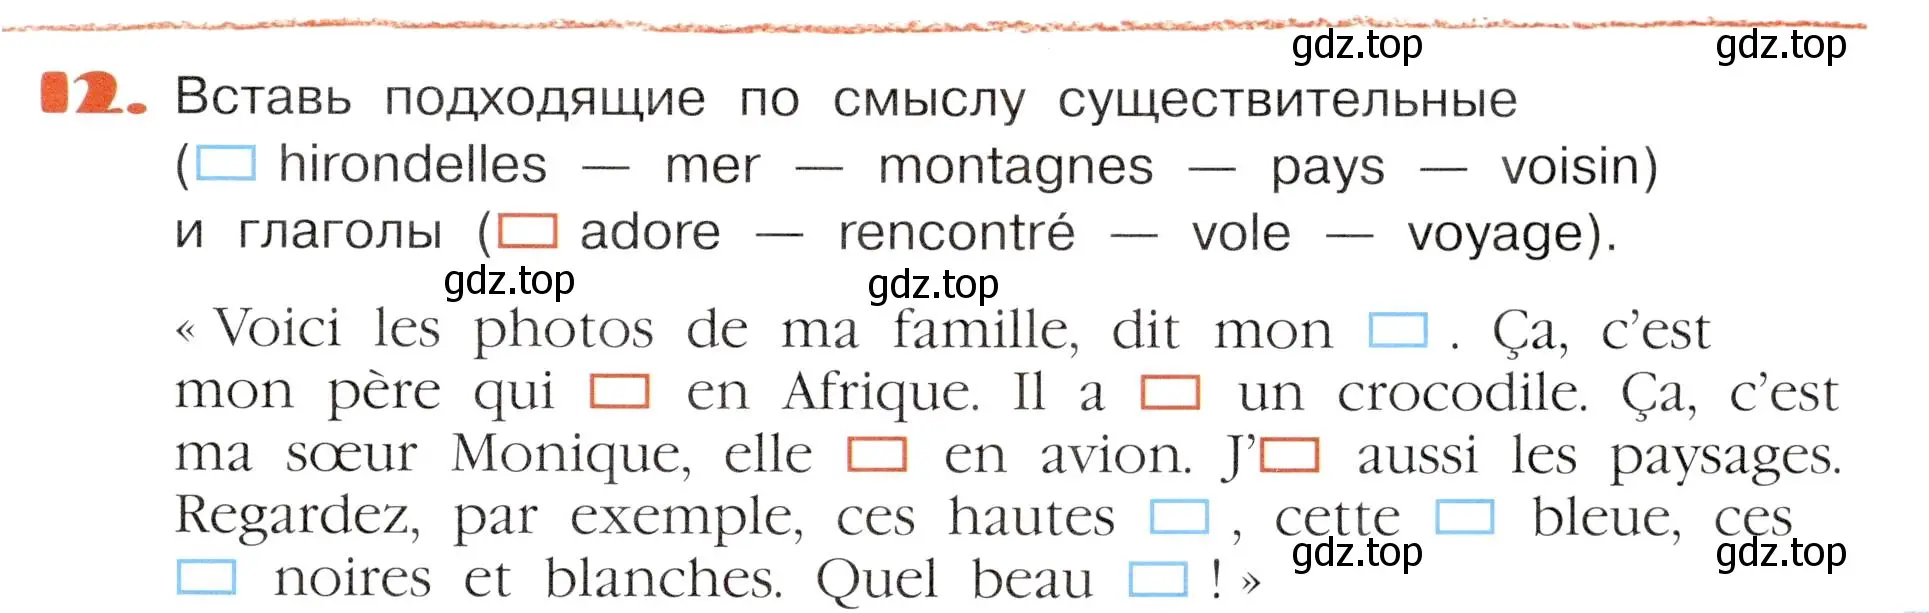 Условие номер 12 (страница 99) гдз по французскому языку 5 класс Береговская, Белосельская, учебник 2 часть